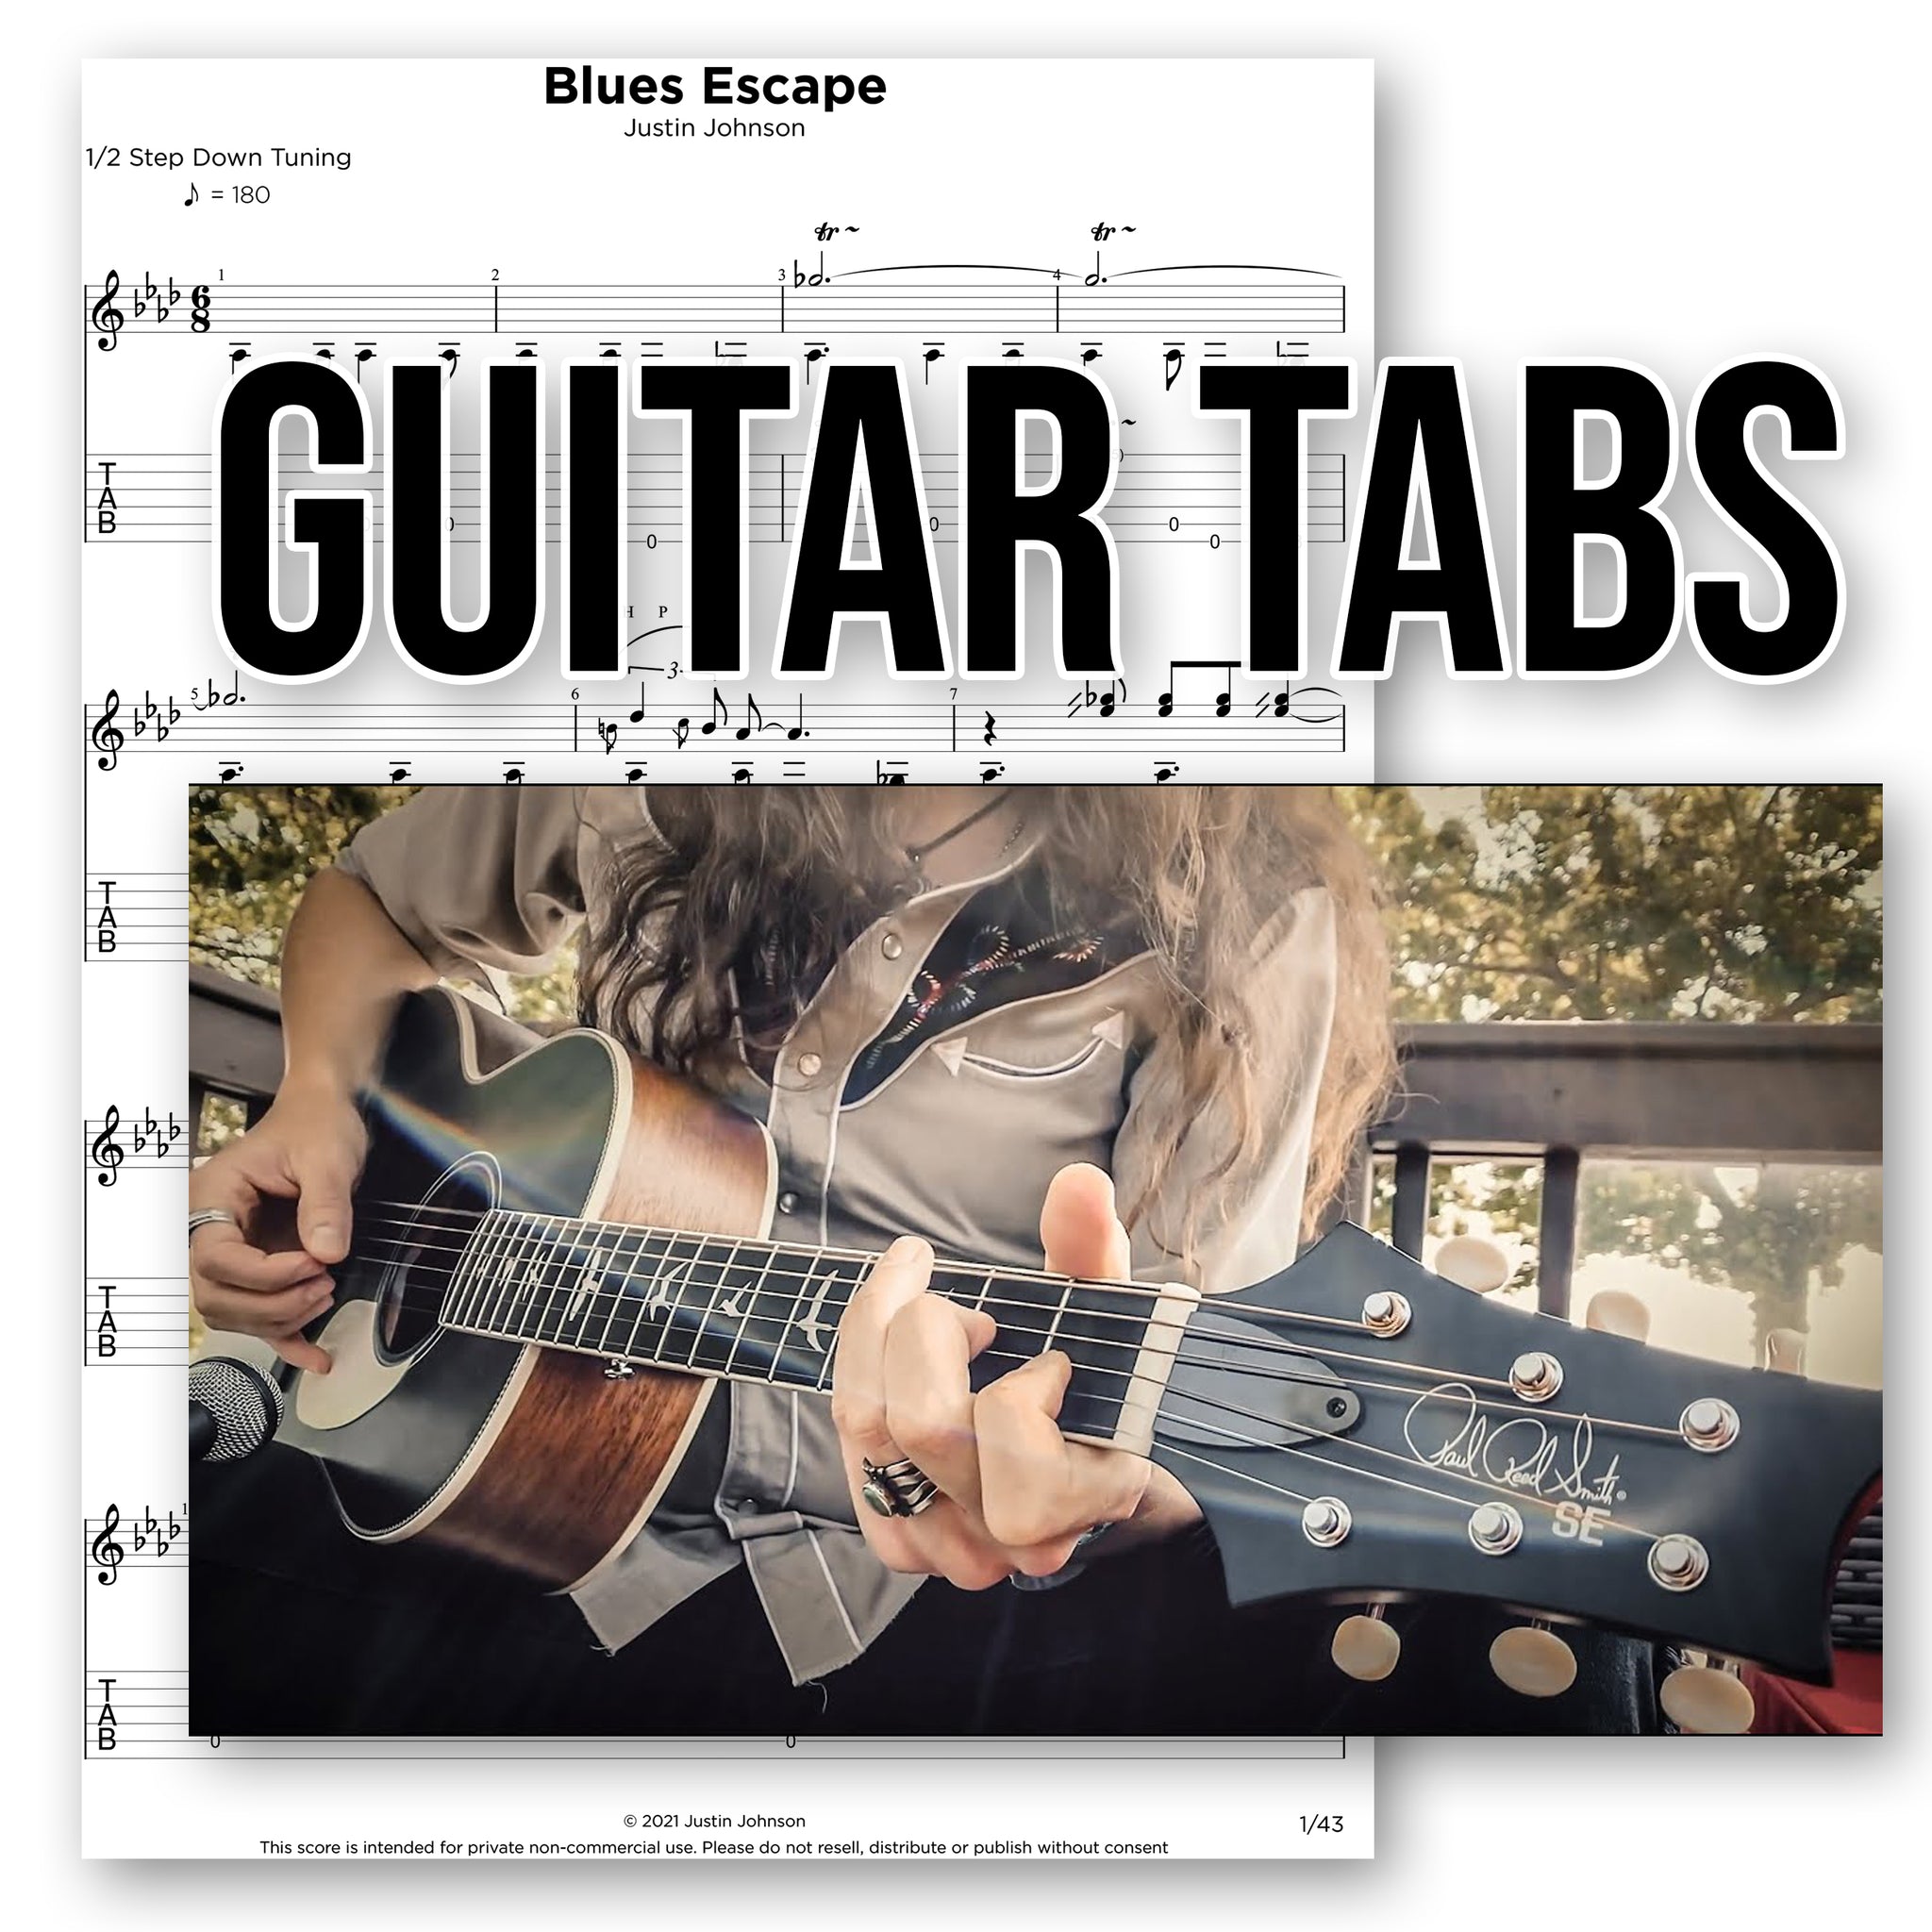 GUITAR TABS - "Blues Escape"